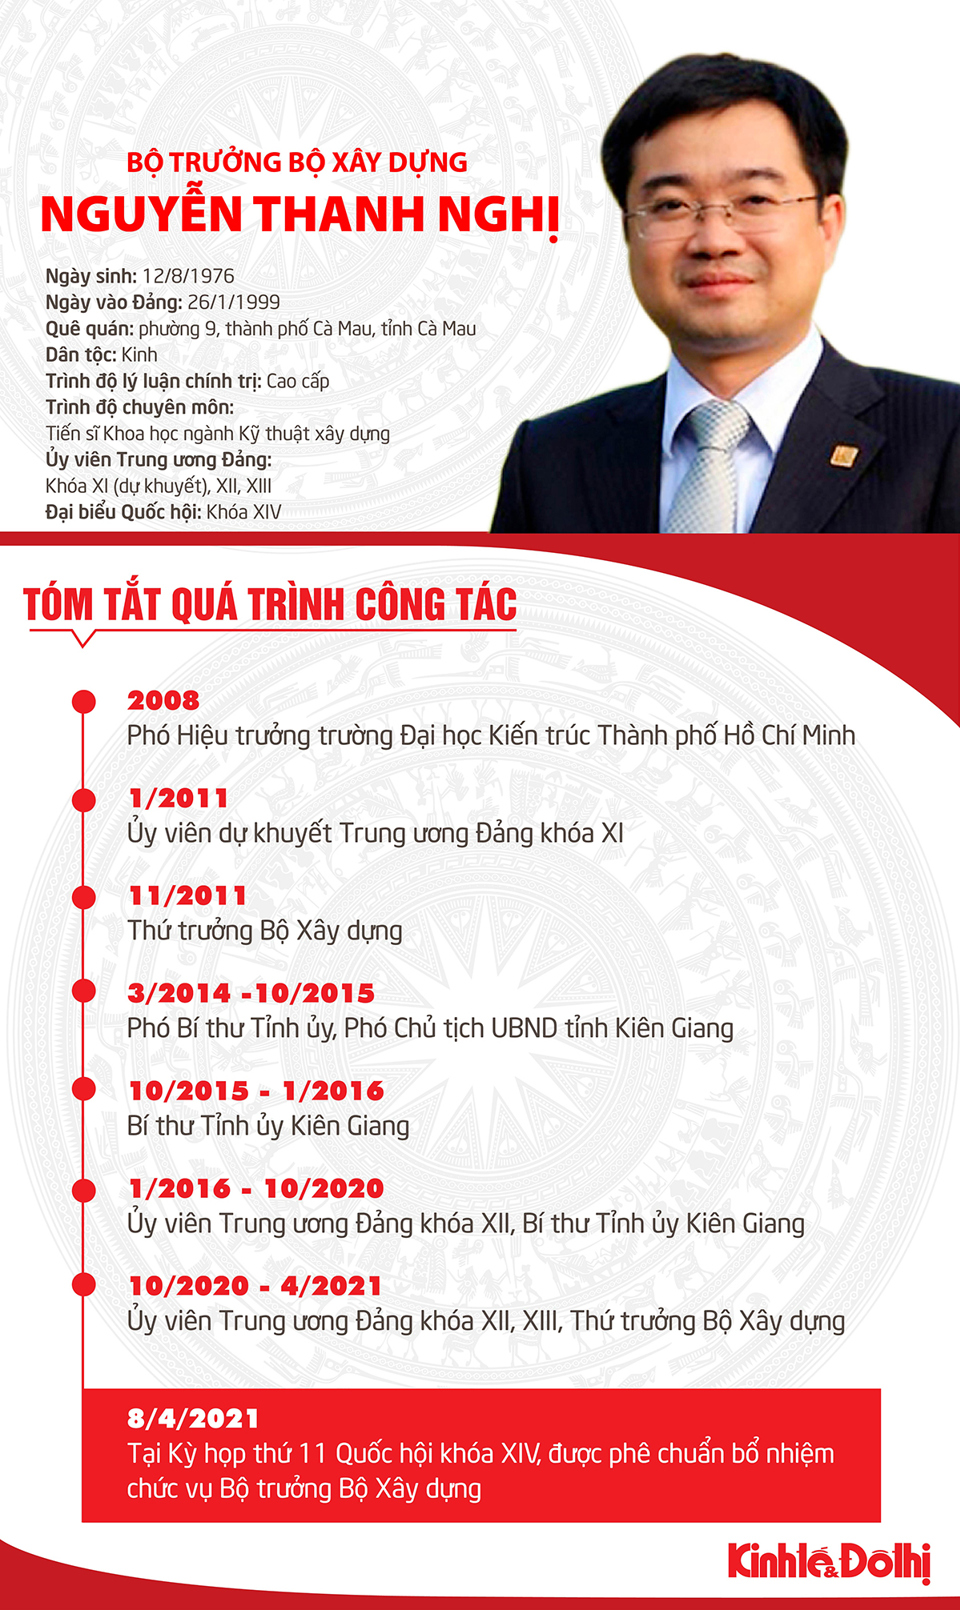 [Infographic] Tóm tắt quá trình công tác của tân Bộ trưởng Bộ Xây dựng Nguyễn Thanh Nghị - Ảnh 1